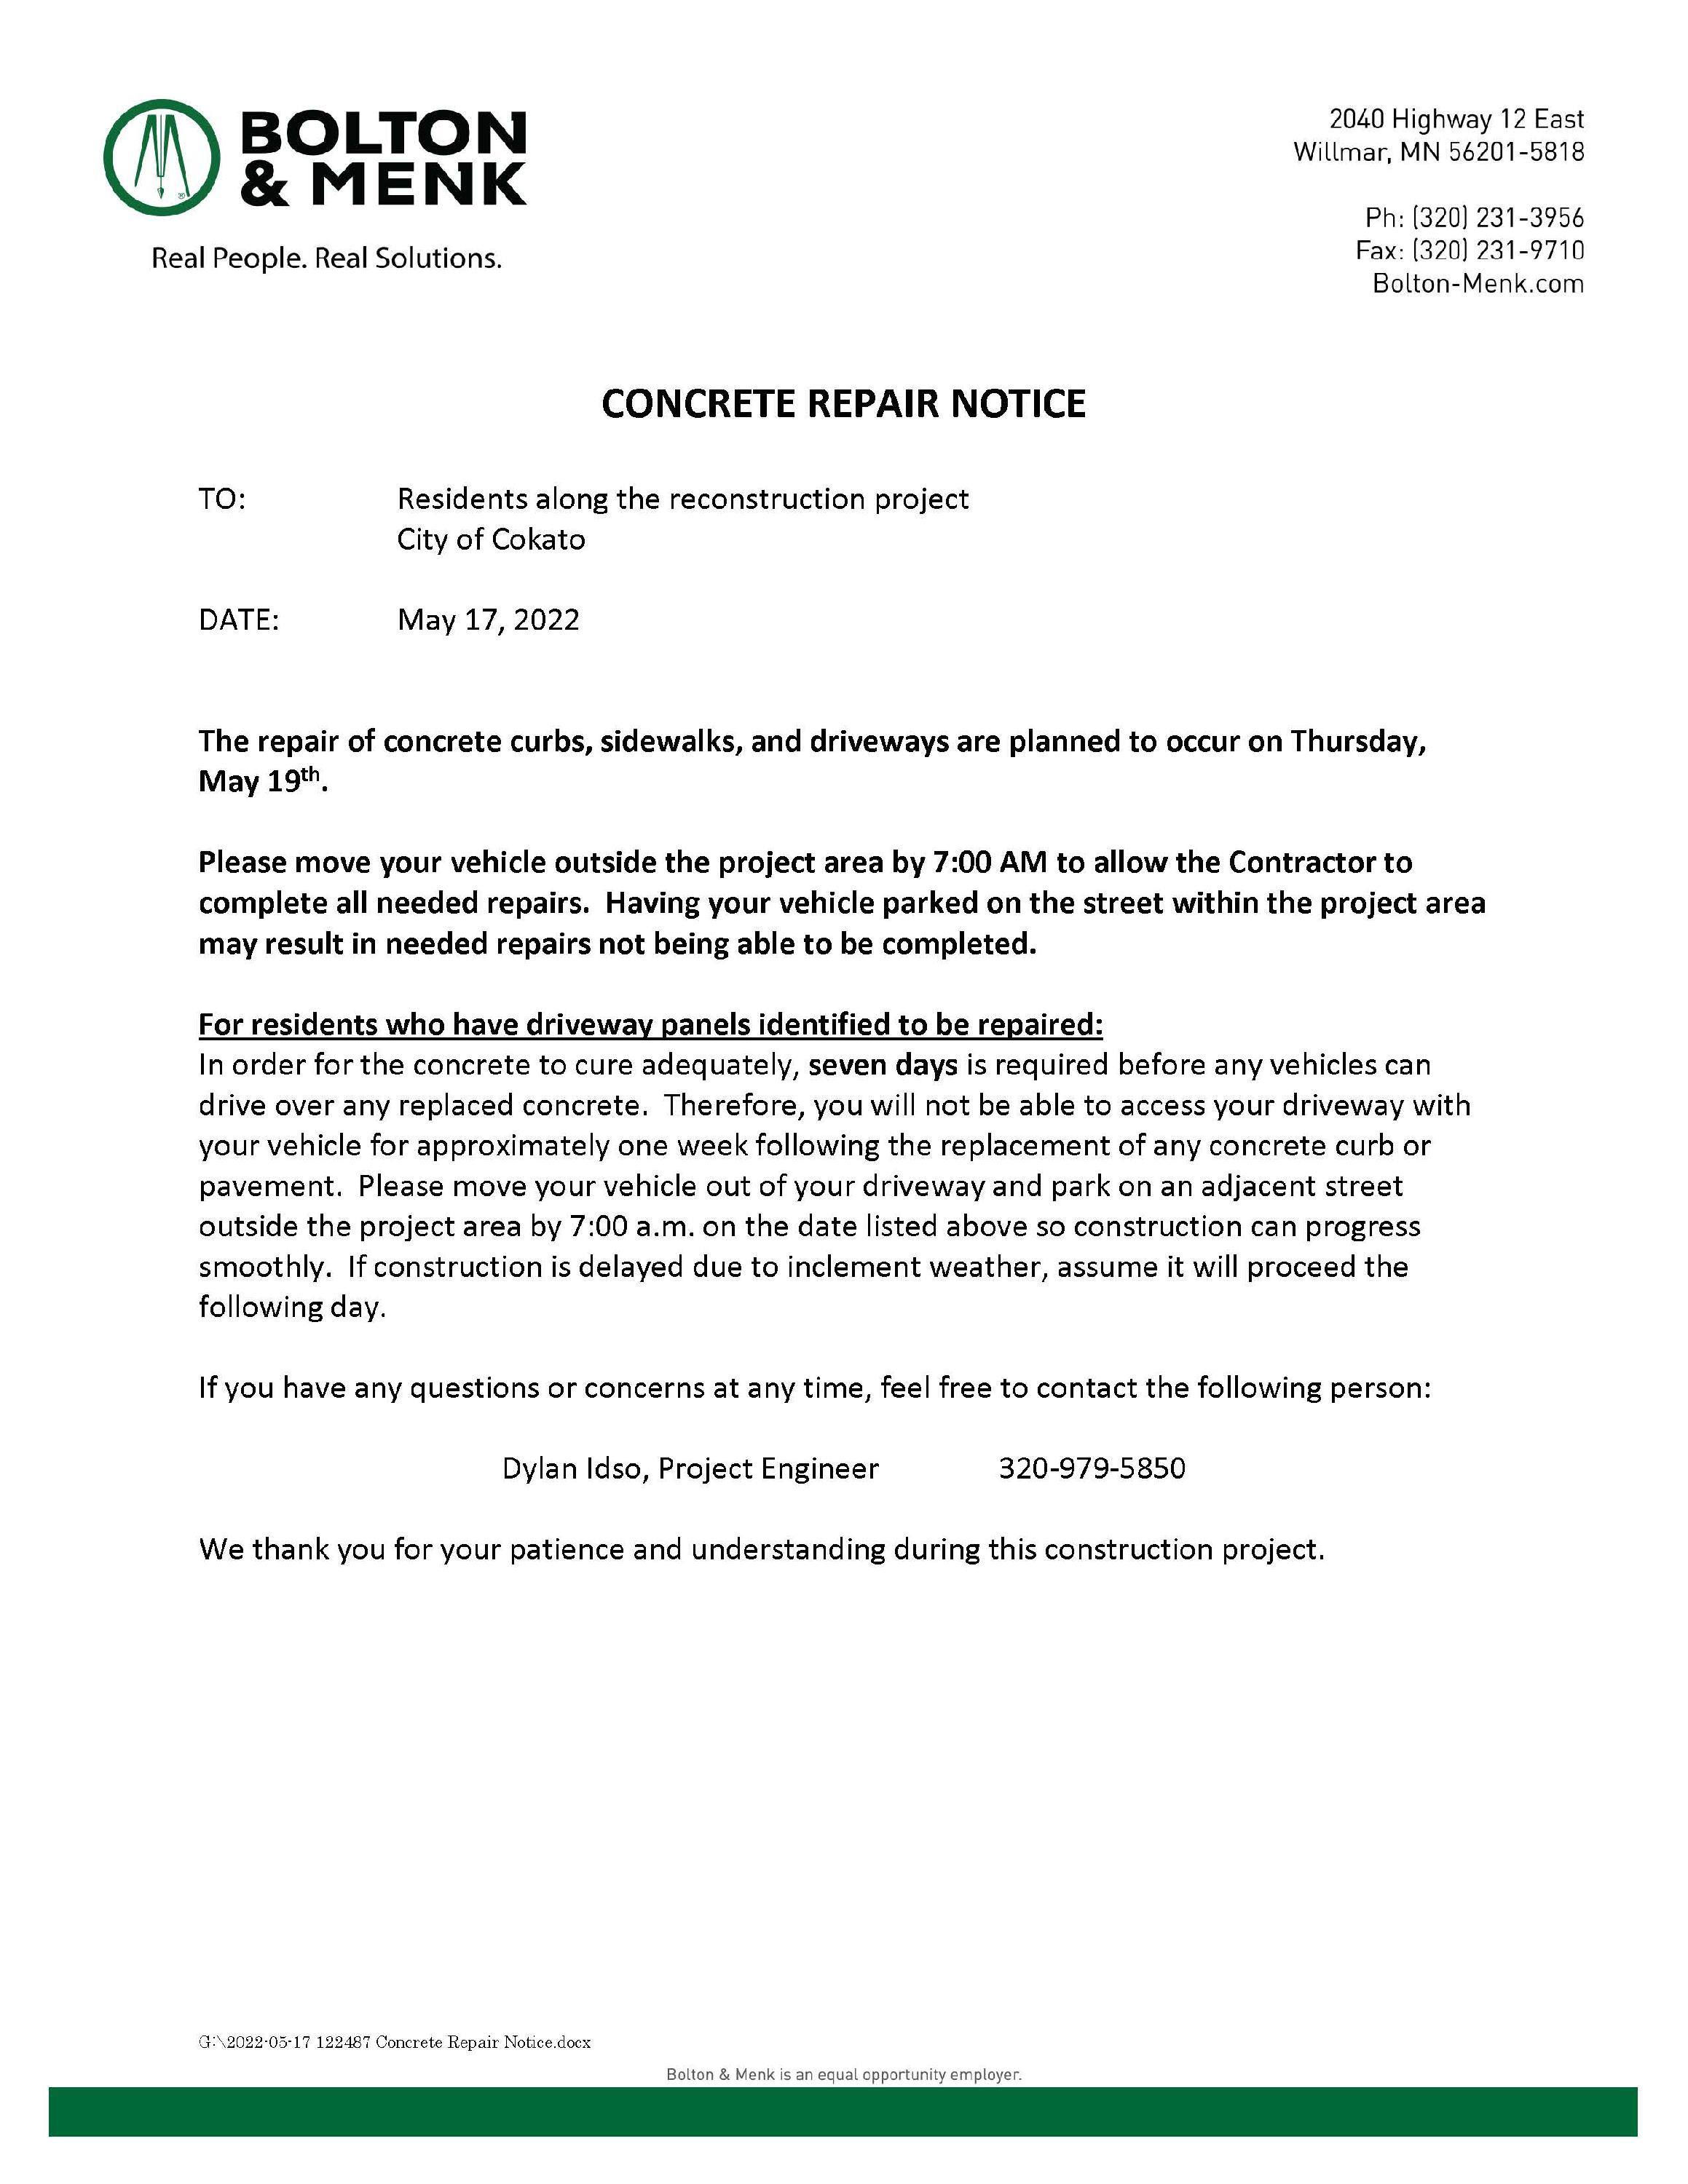 2022-05-17 122487 Concrete Repair Notice